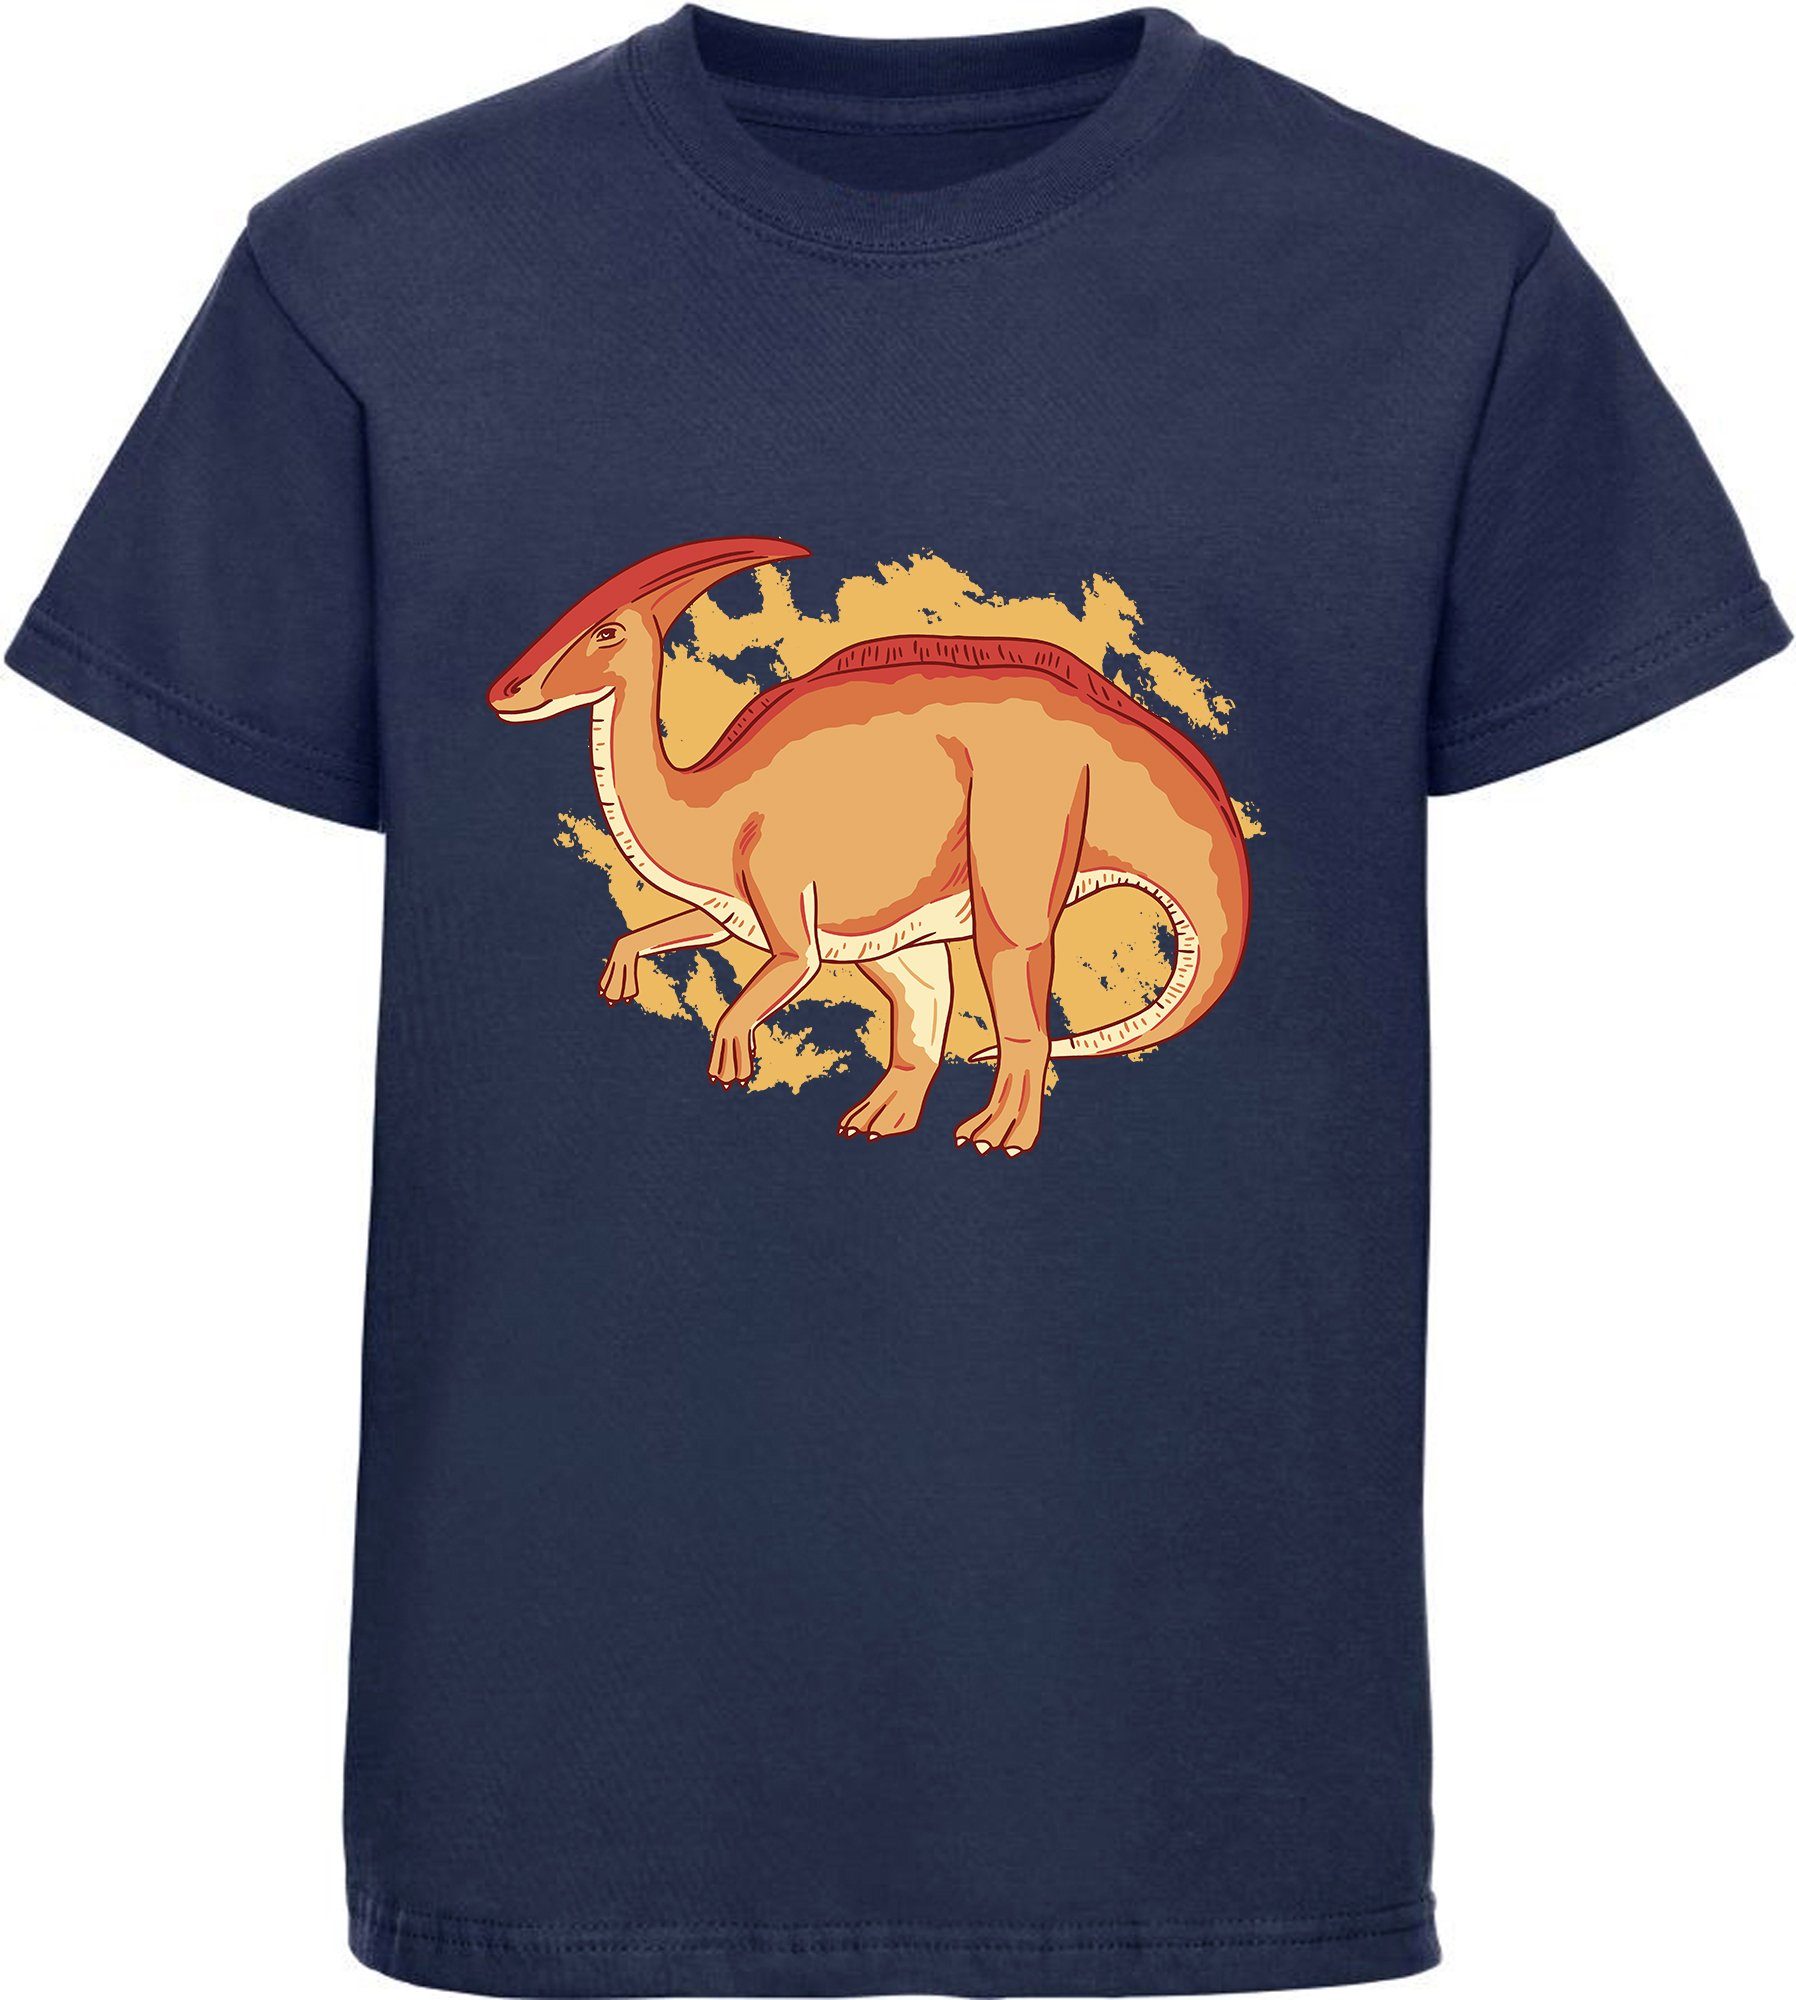 MyDesign24 Print-Shirt bedrucktes Kinder T-Shirt mit Parasaurolophus Baumwollshirt mit Dino, schwarz, weiß, rot, blau, i86 navy blau